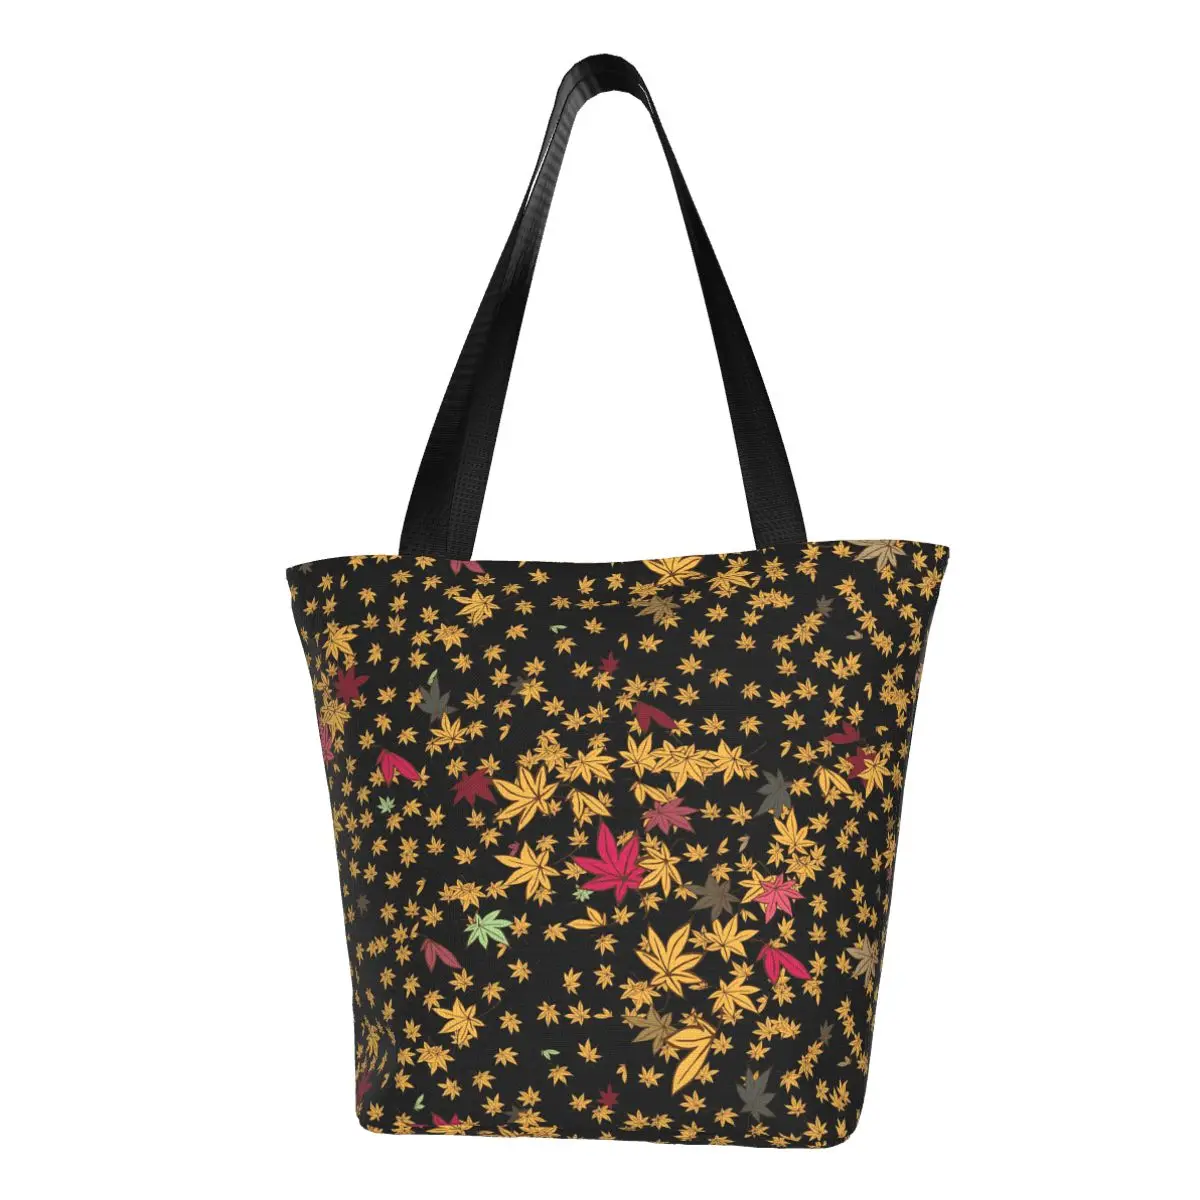 

Сумка-шоппер с принтом листьев, стильные сумки в разноцветный горошек, сумка-тоут из полиэстера для колледжа, женская пляжная сумка с графическим рисунком